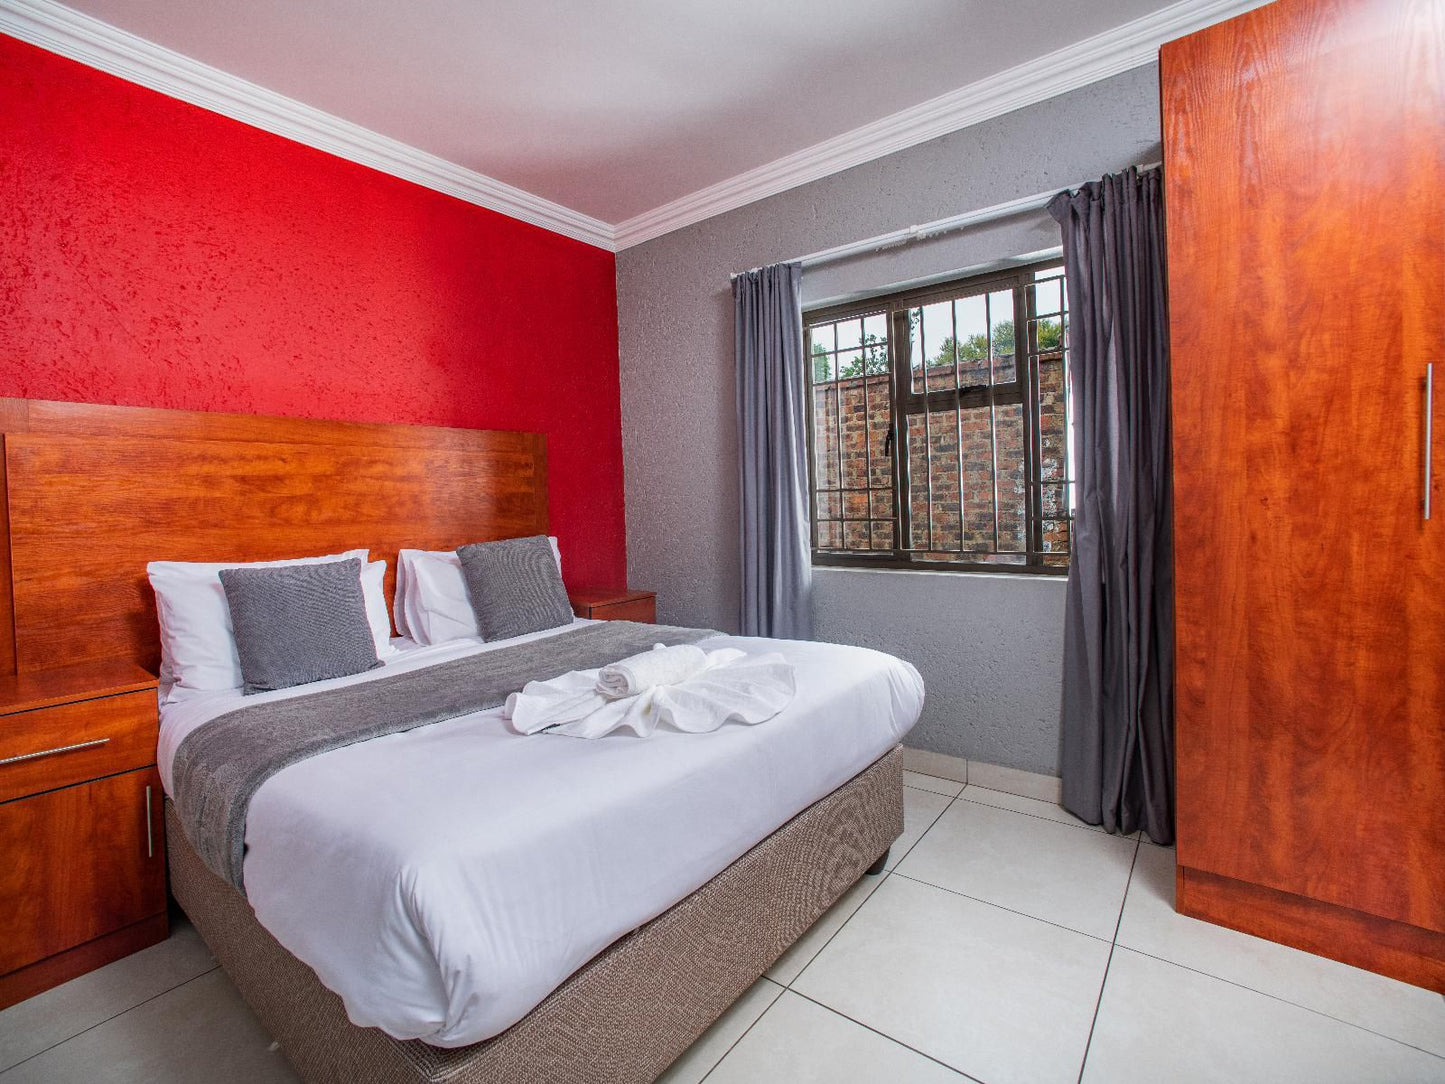 Khayalami Hotels Emalahleni Riverview Witbank Emalahleni Mpumalanga South Africa Bedroom